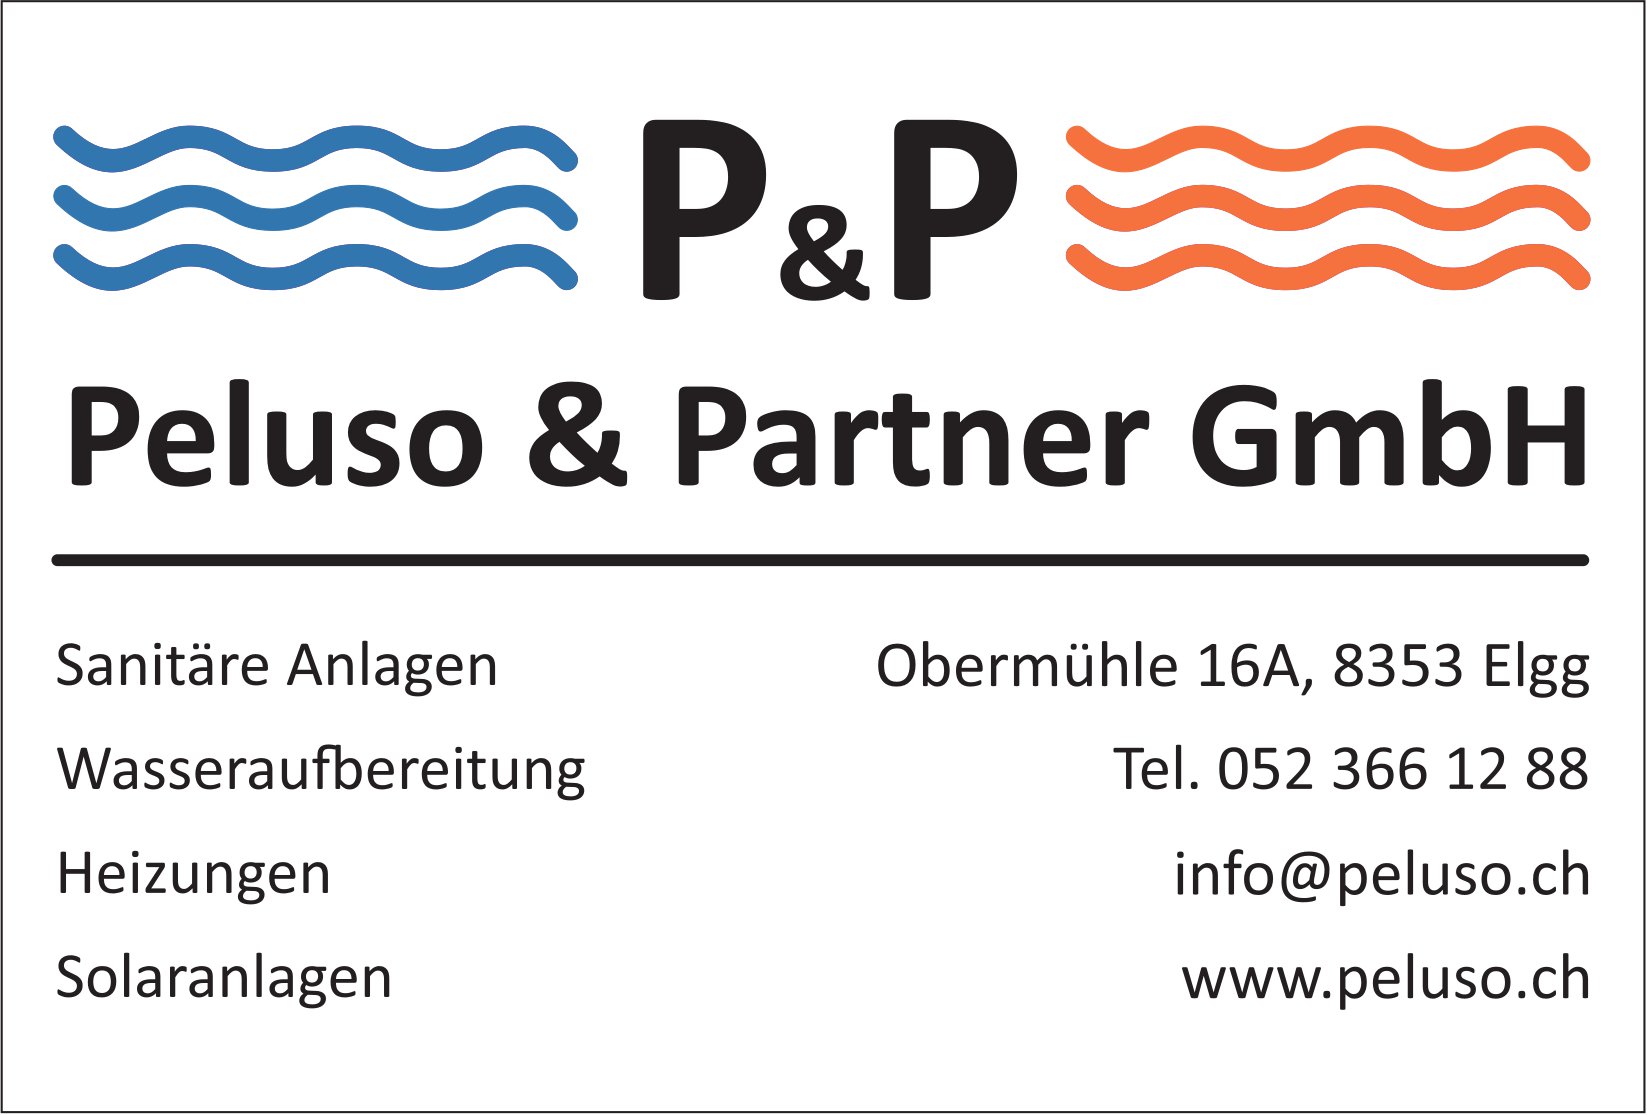 Peluso & Partner GmbH, Elgg - Sanitäre Anlagen, Wasseraufbereitung, Heizungen, Solaranlagen